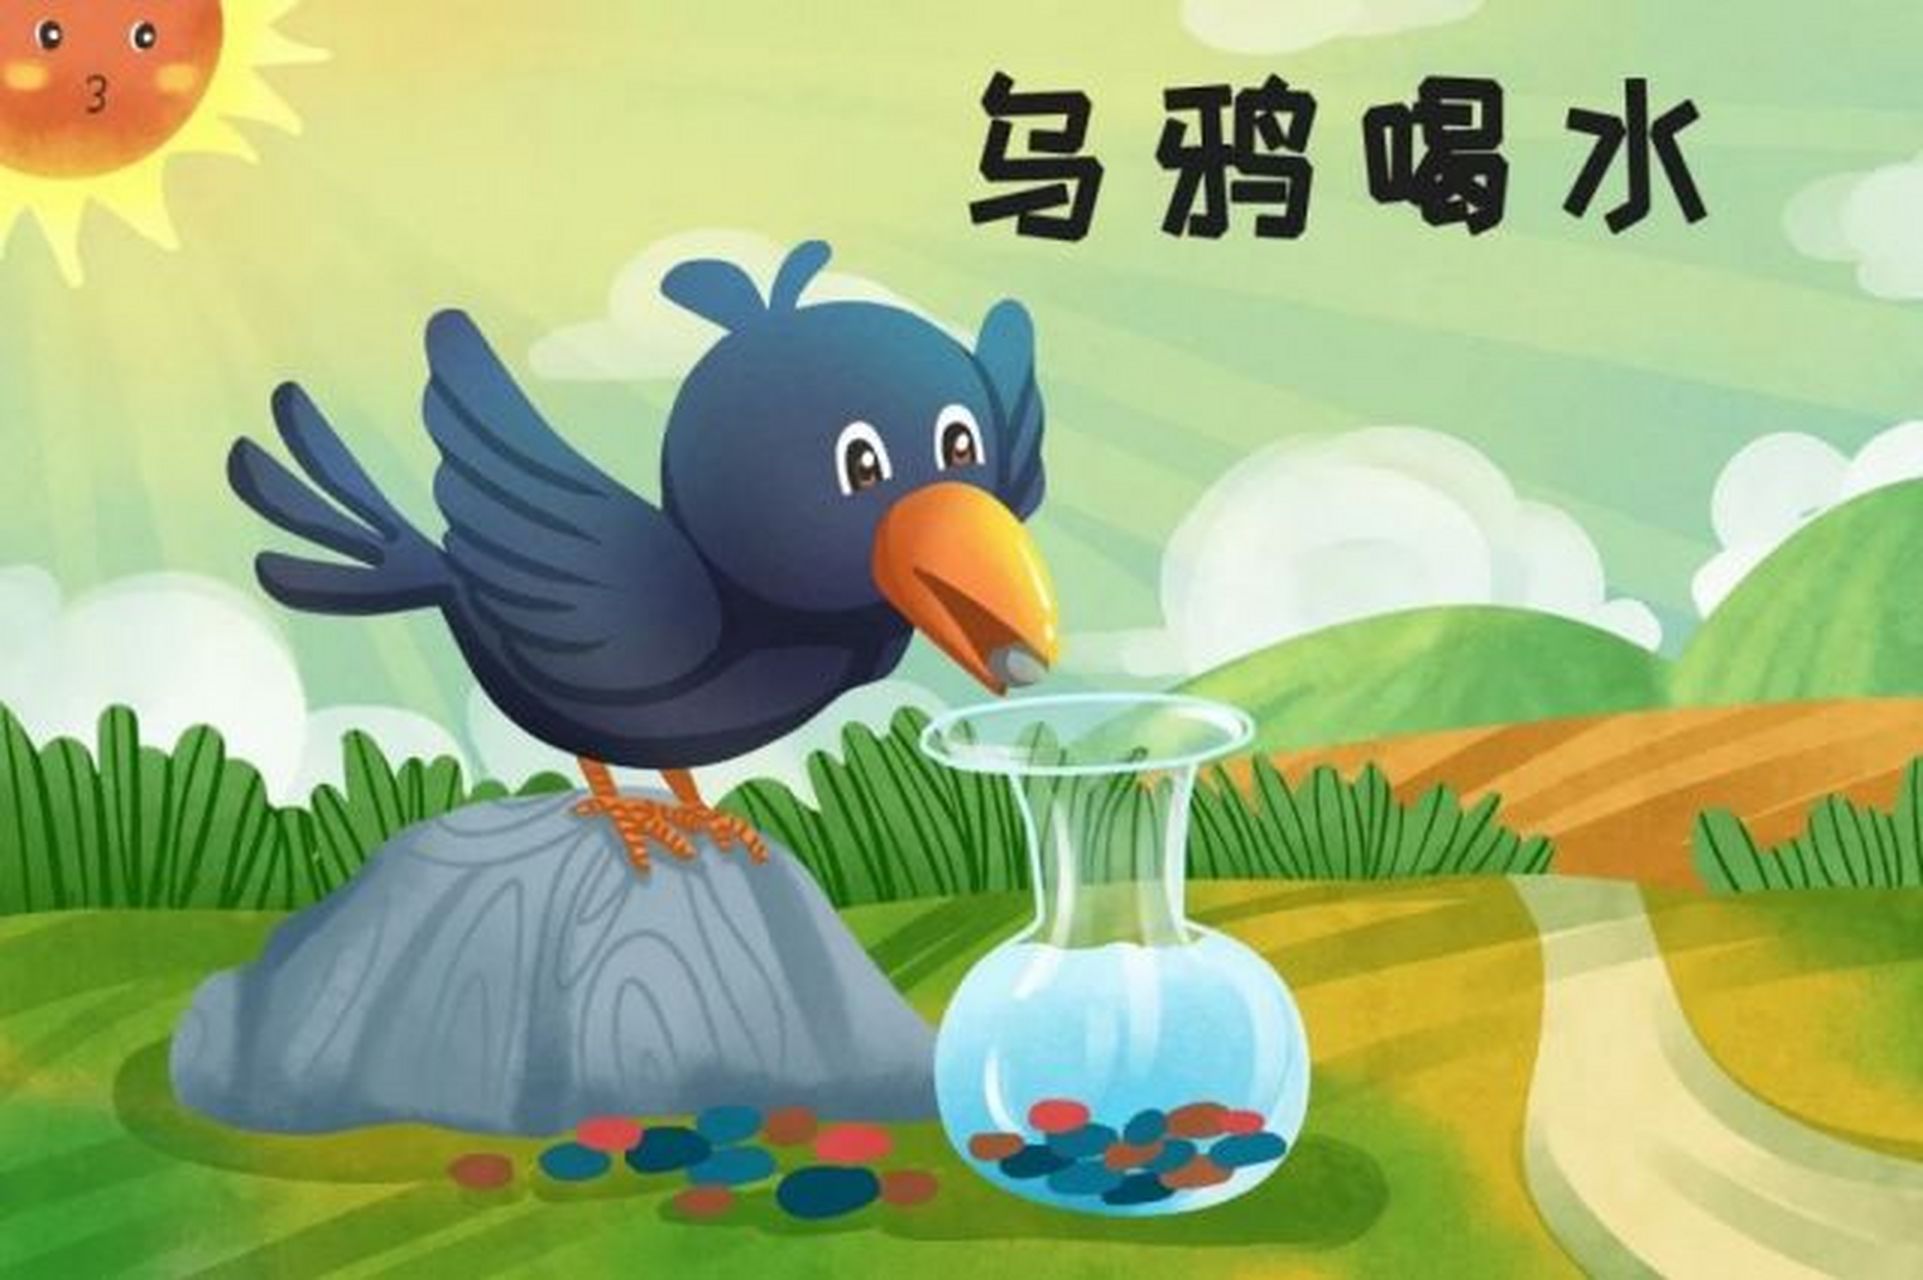 小学语文《乌鸦喝水》的故事是真的吗?我们真的被骗了几十年吗?